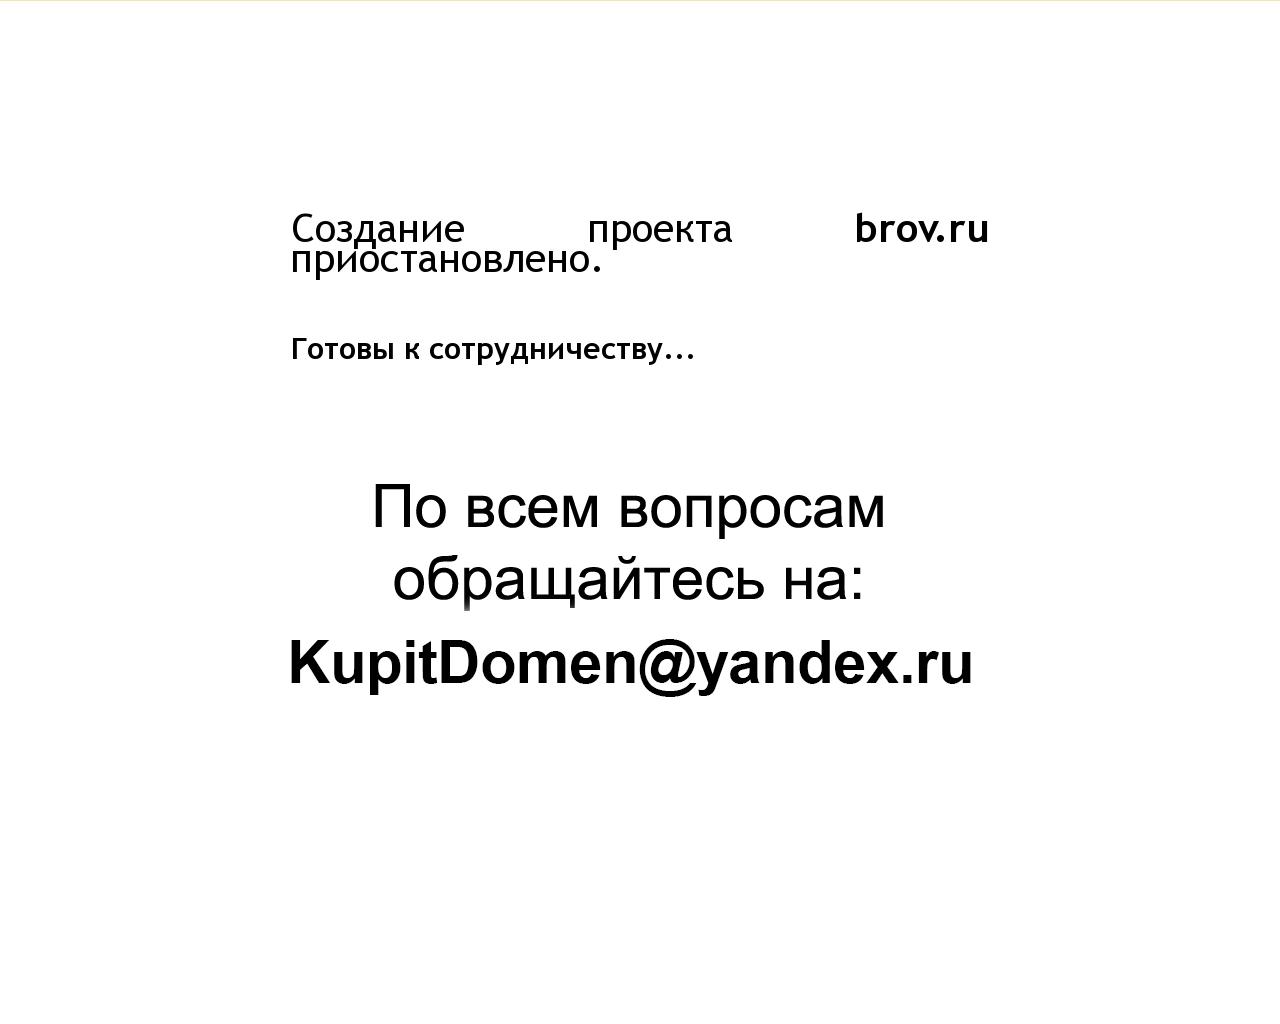 Изображение сайта brov.ru в разрешении 1280x1024